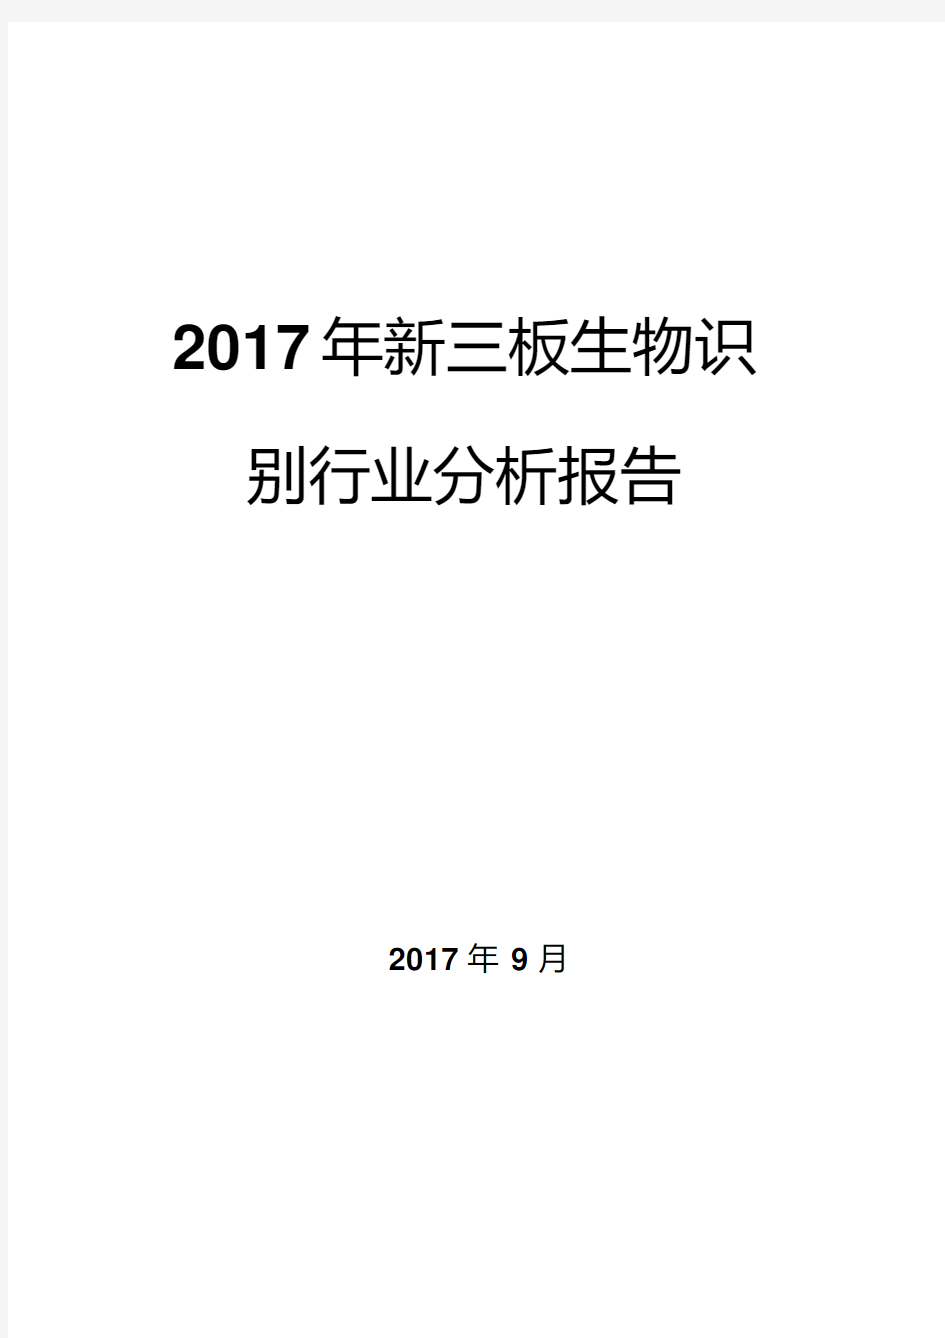 2017年新三板生物识别行业分析报告